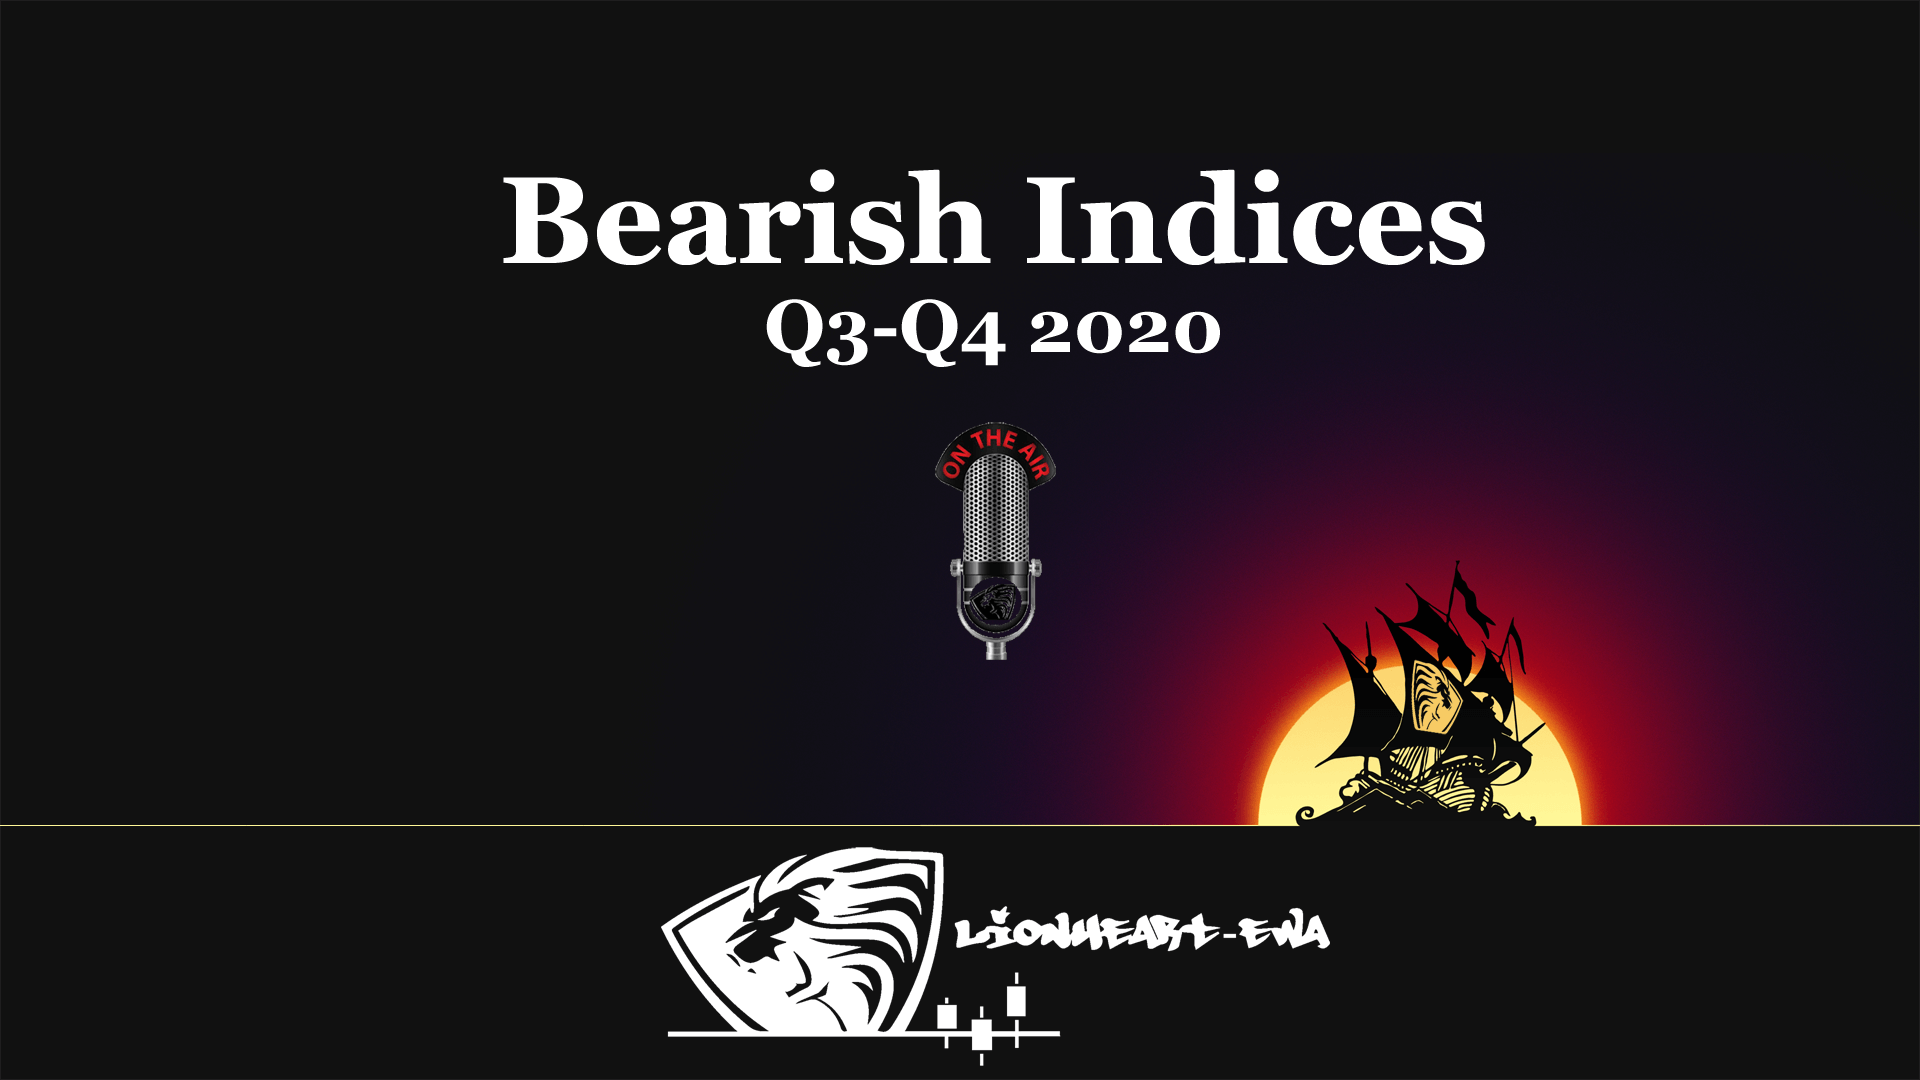 Bearish Indices | Elliott Wave | Q3-Q4 2020